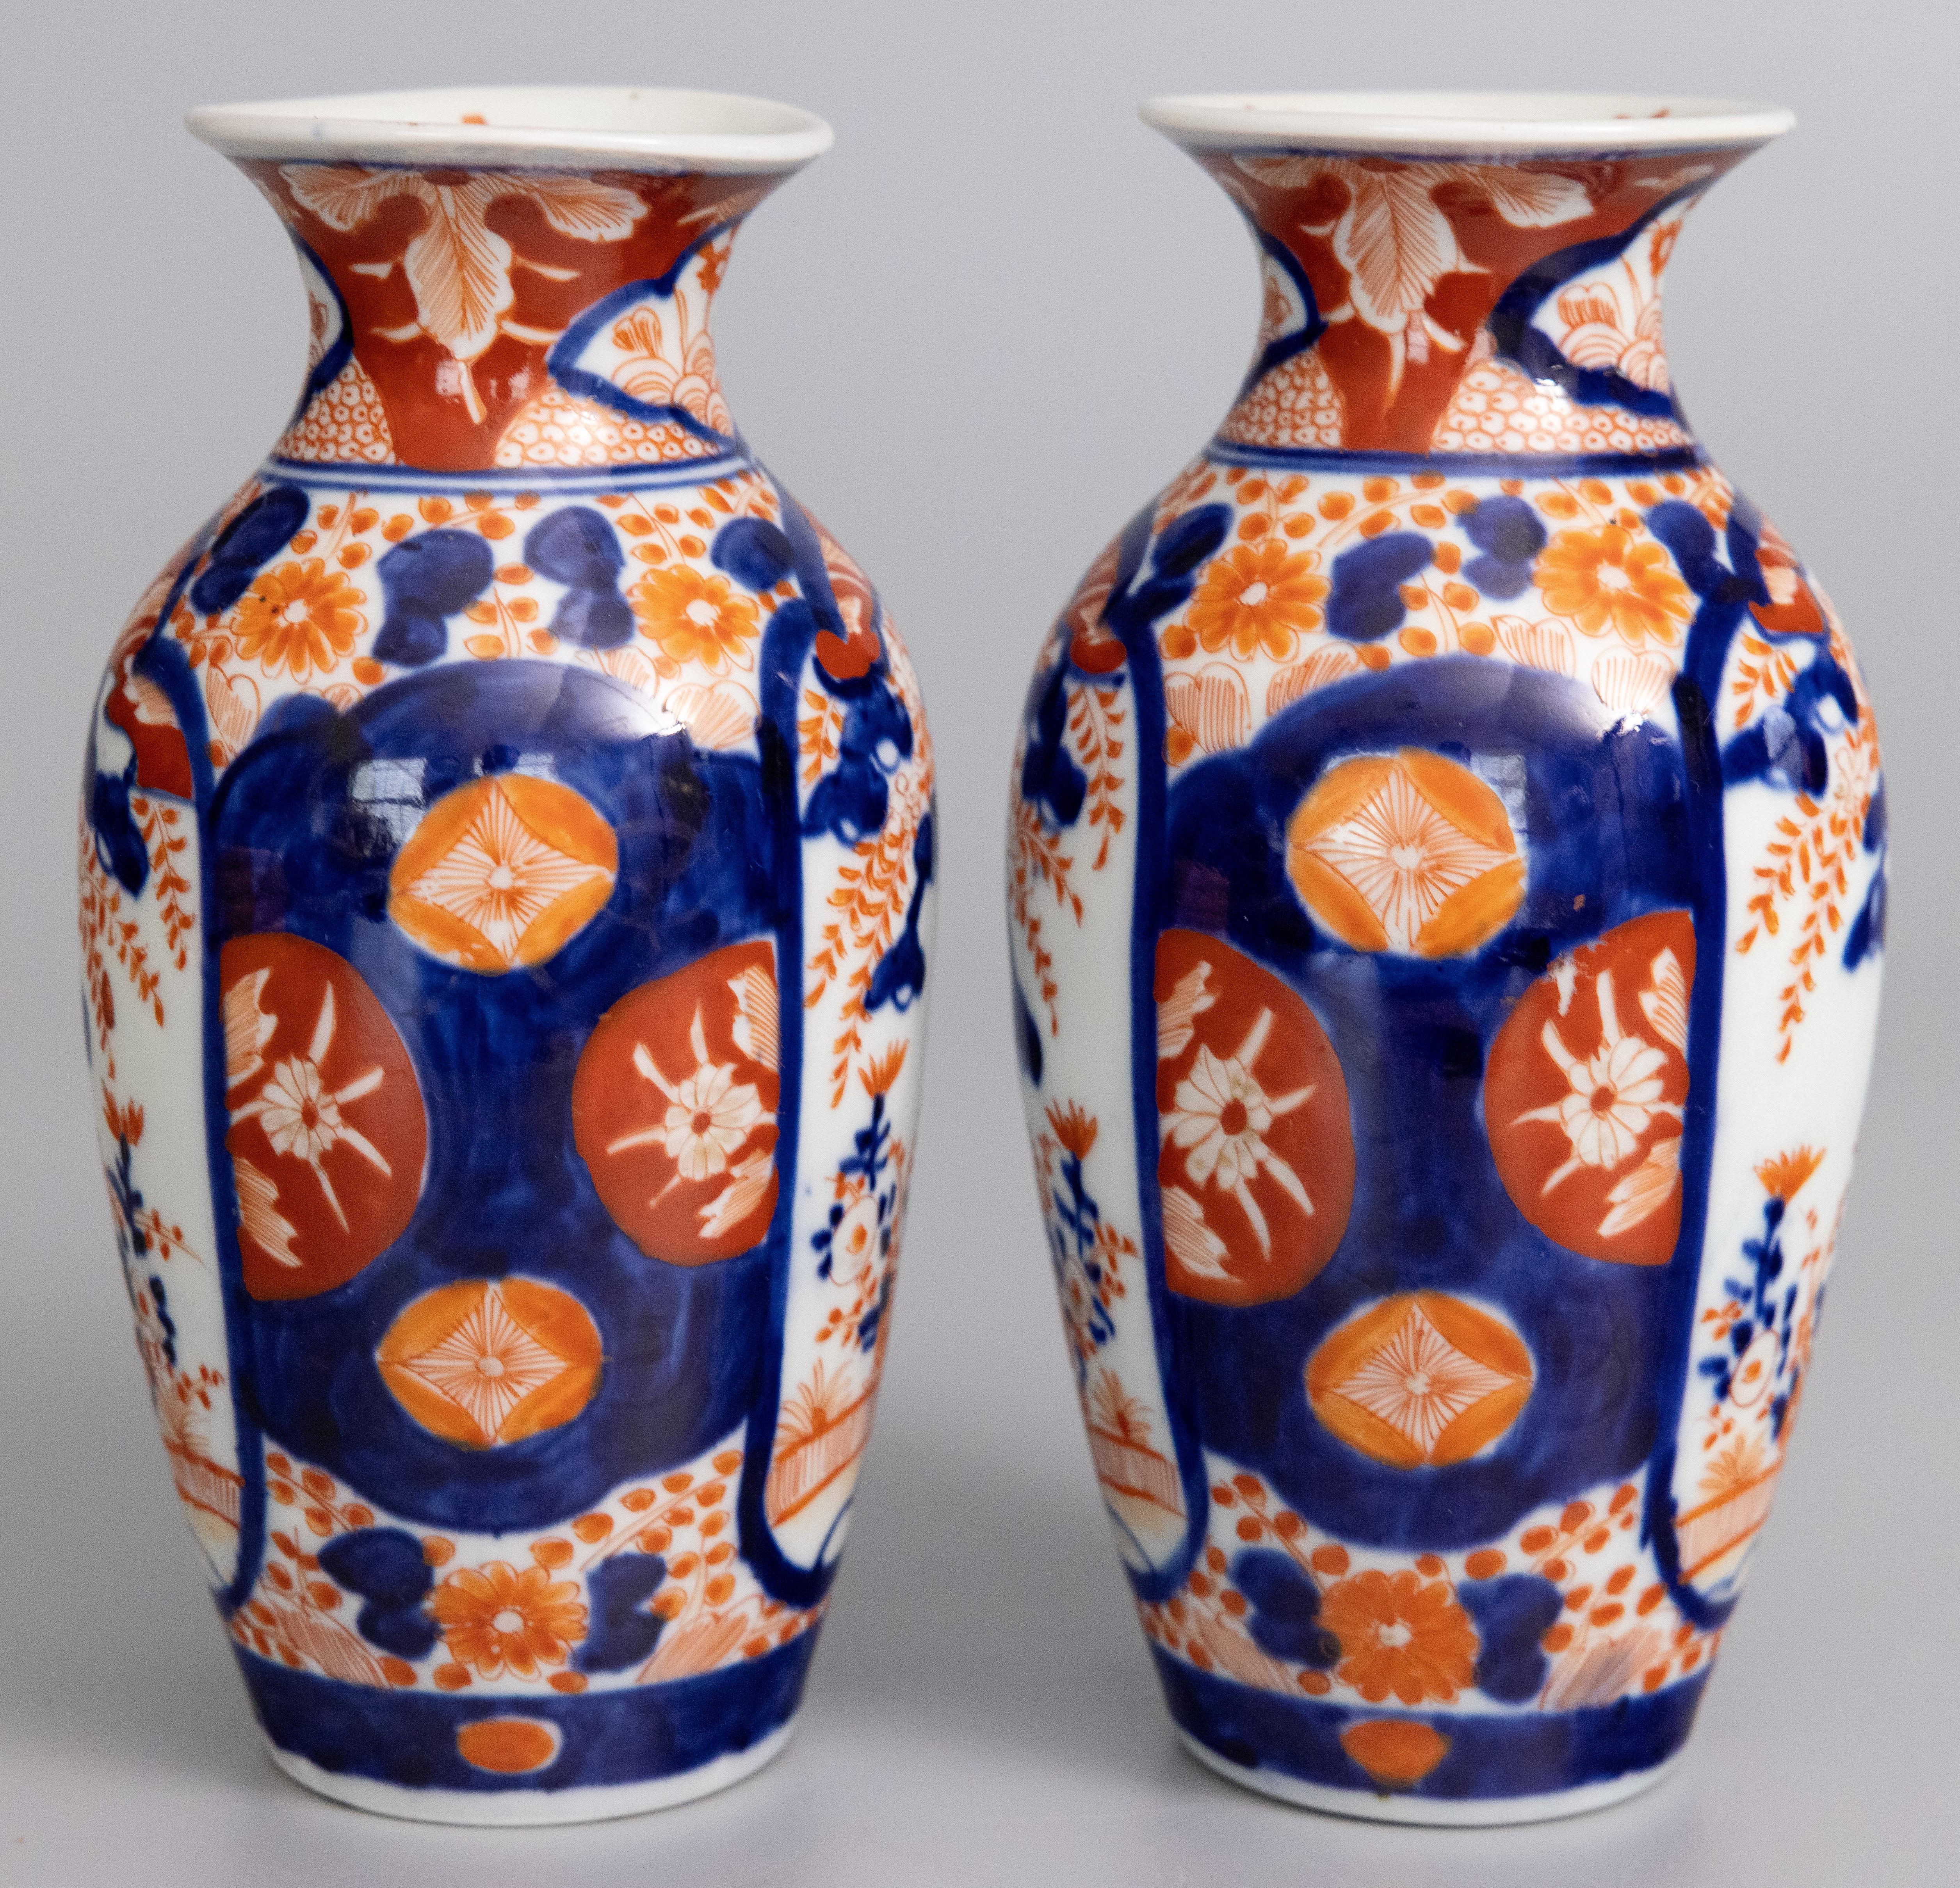 Une belle paire de vases en porcelaine japonaise Imari du XIXe siècle. Ces vases fins ont une forme charmante et des motifs floraux peints à la main dans les couleurs traditionnelles d'Imari. 